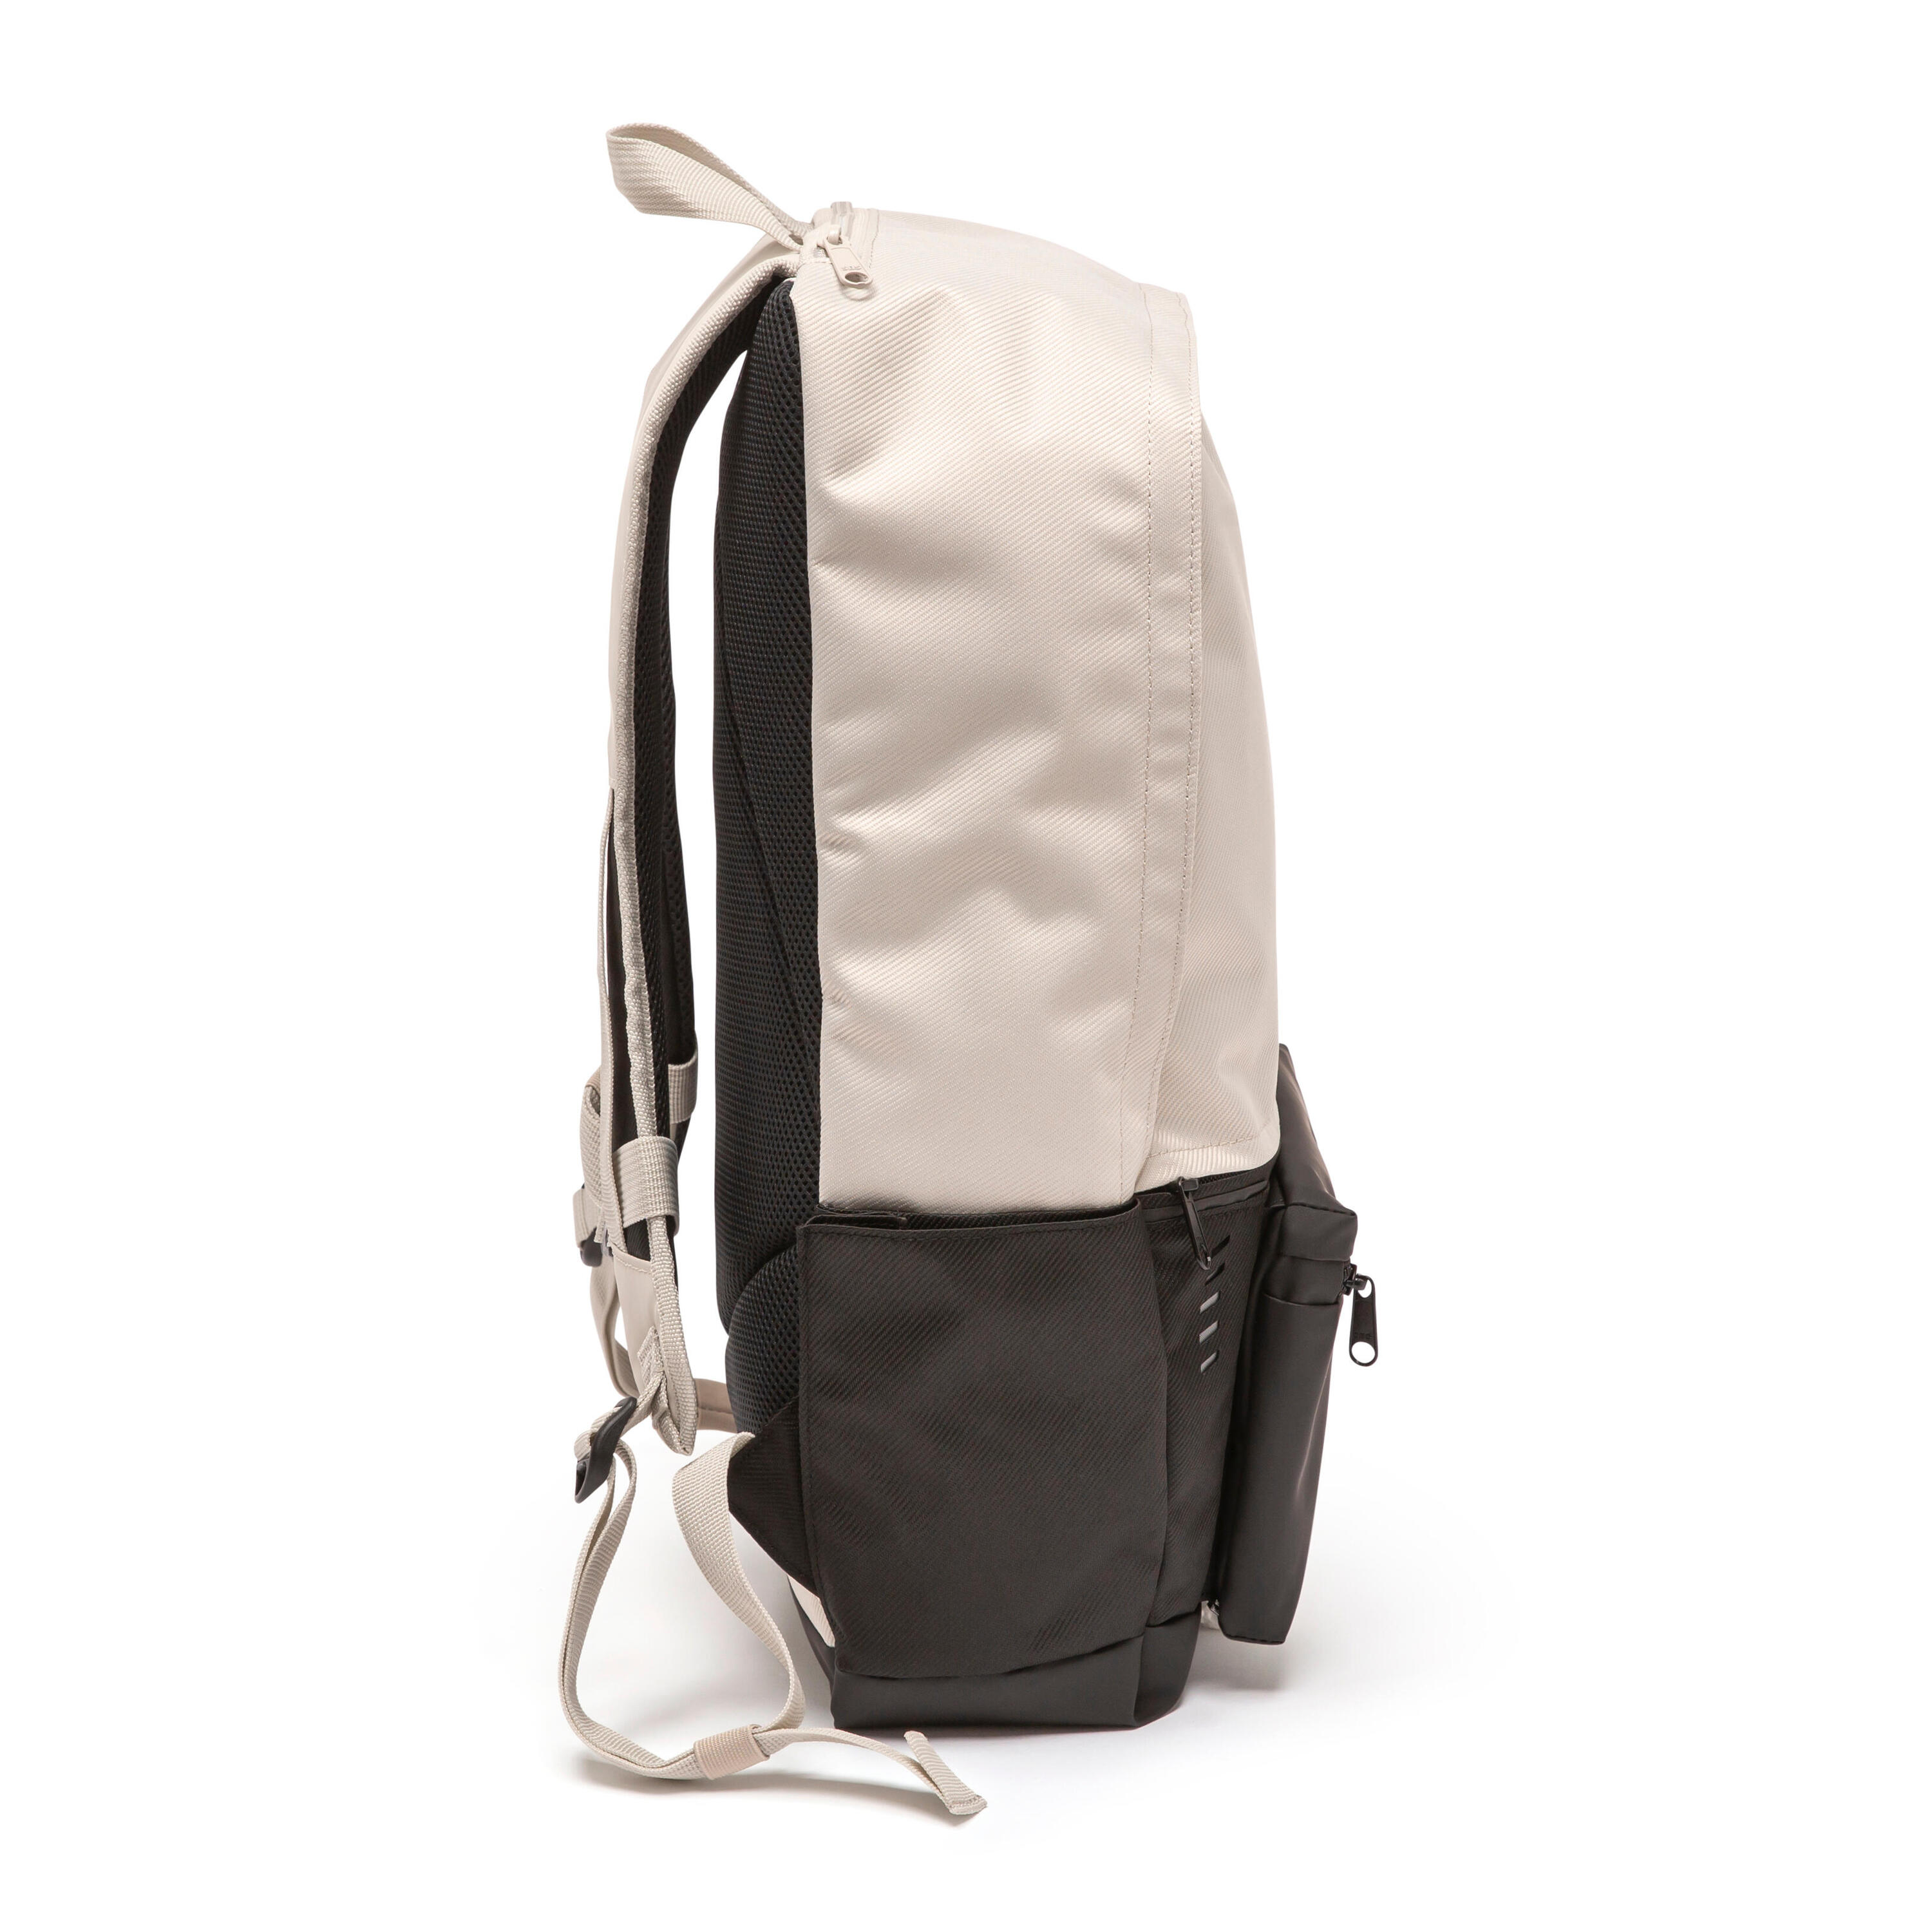 Backpack Academic 25L - Beige 4/13